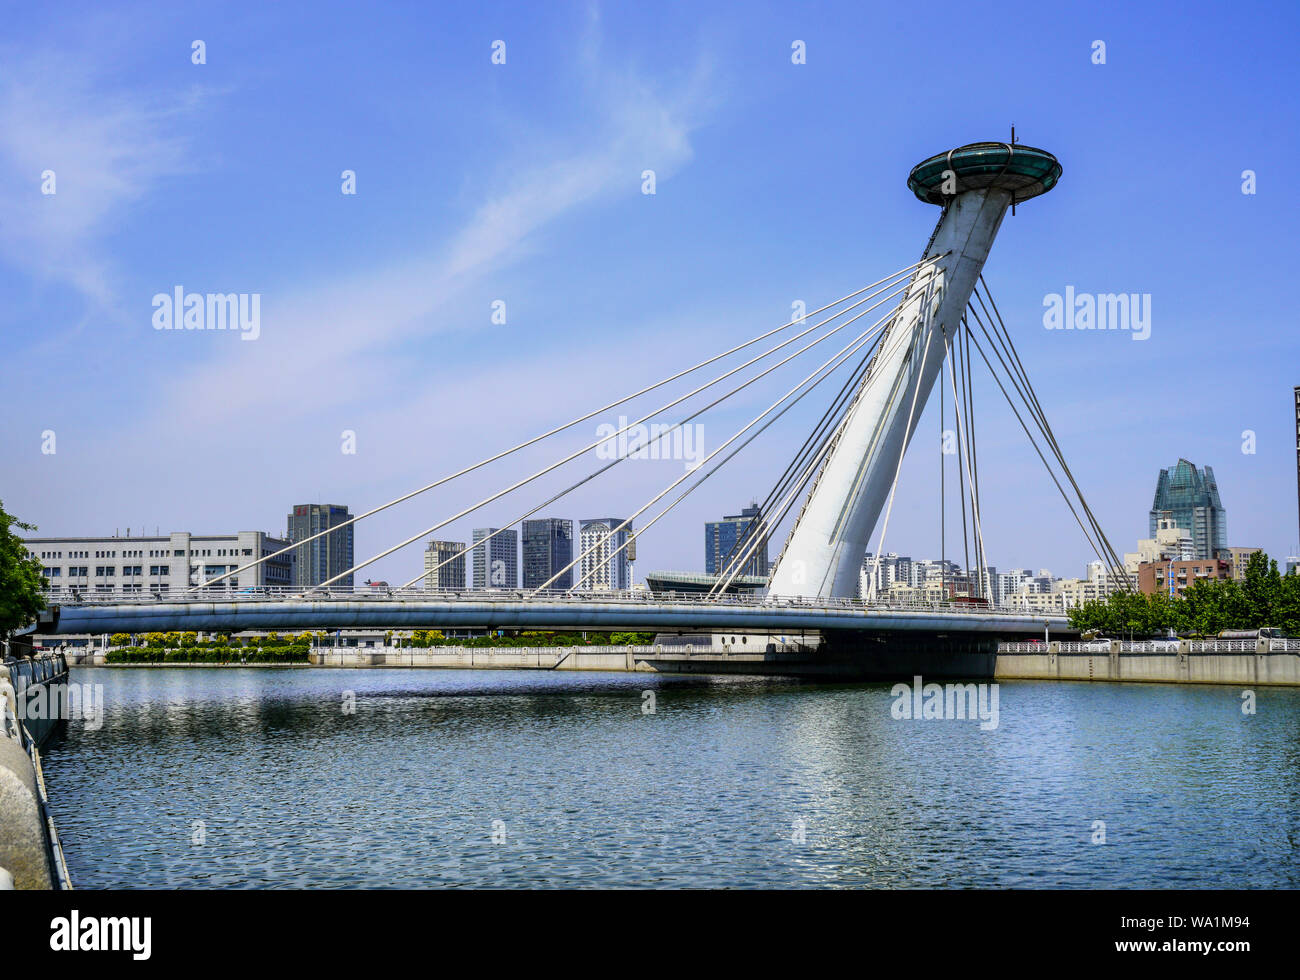 Tianjin - chifeng bridge Stock Photo